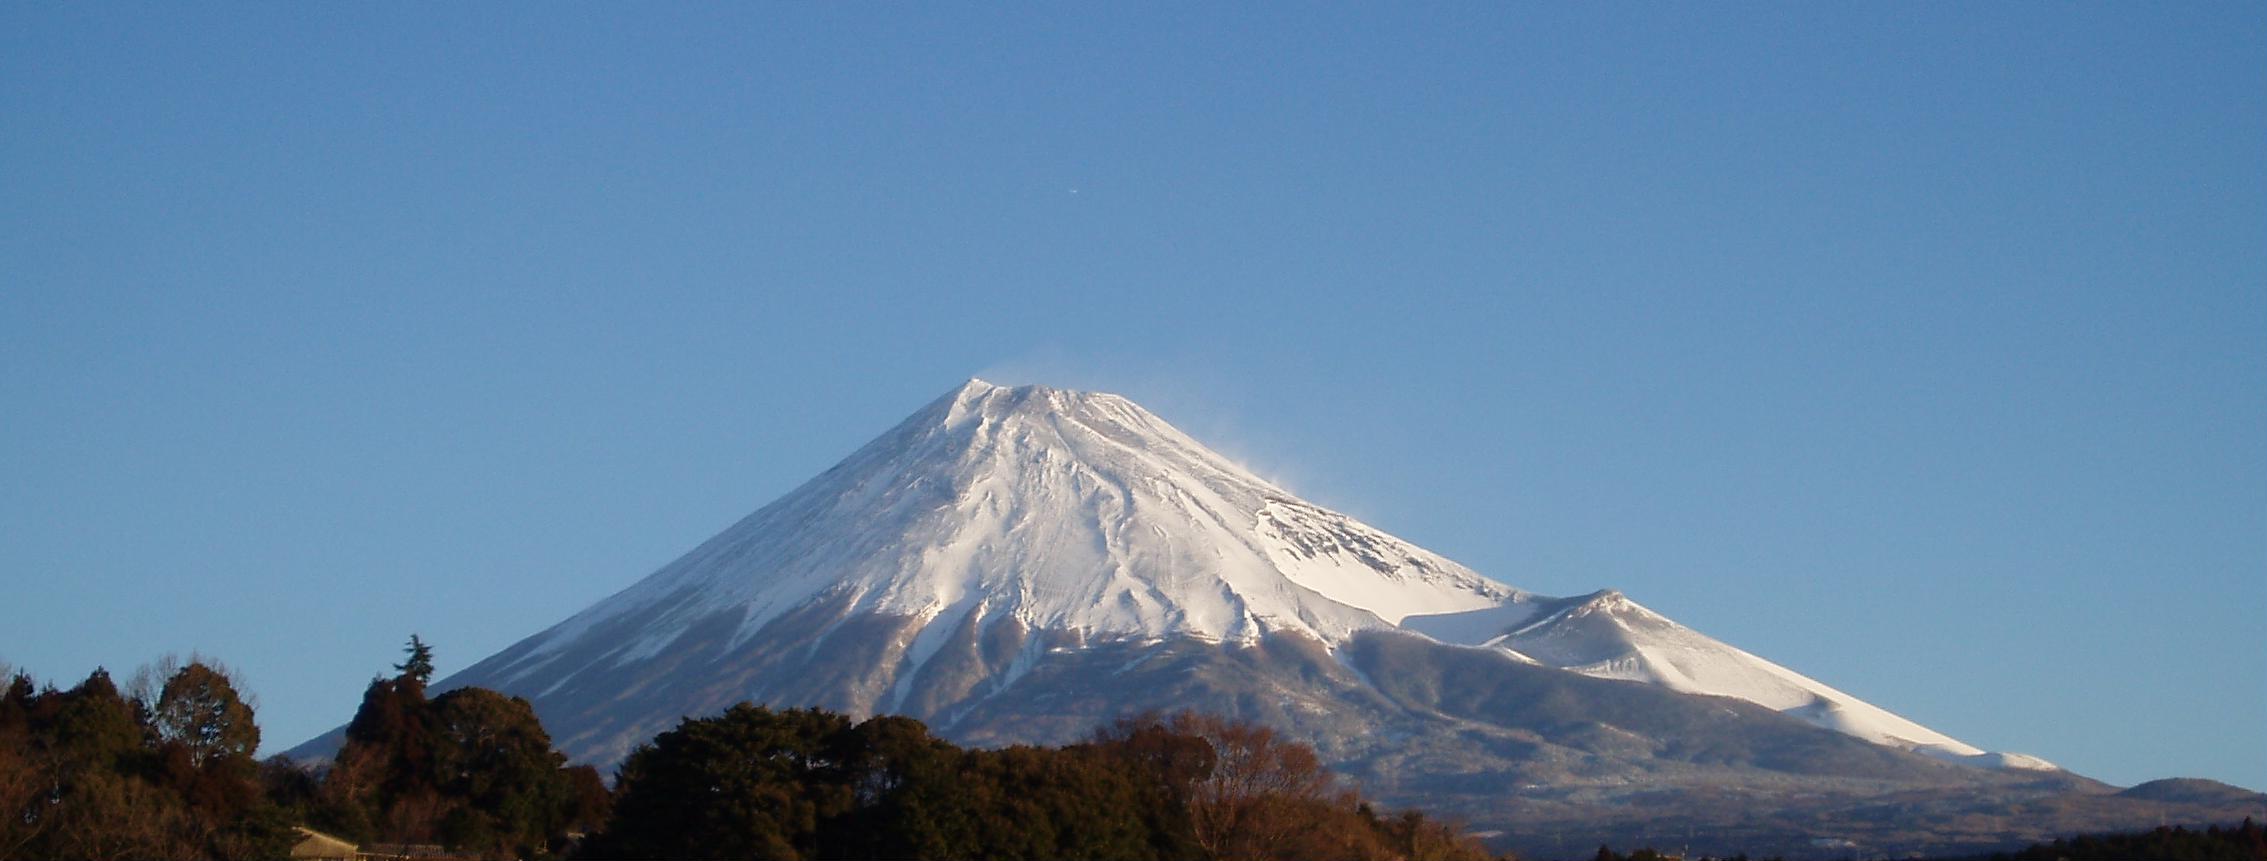 厳冬の朝に雪煙が舞い上がる富士(2008年2月 富士市)